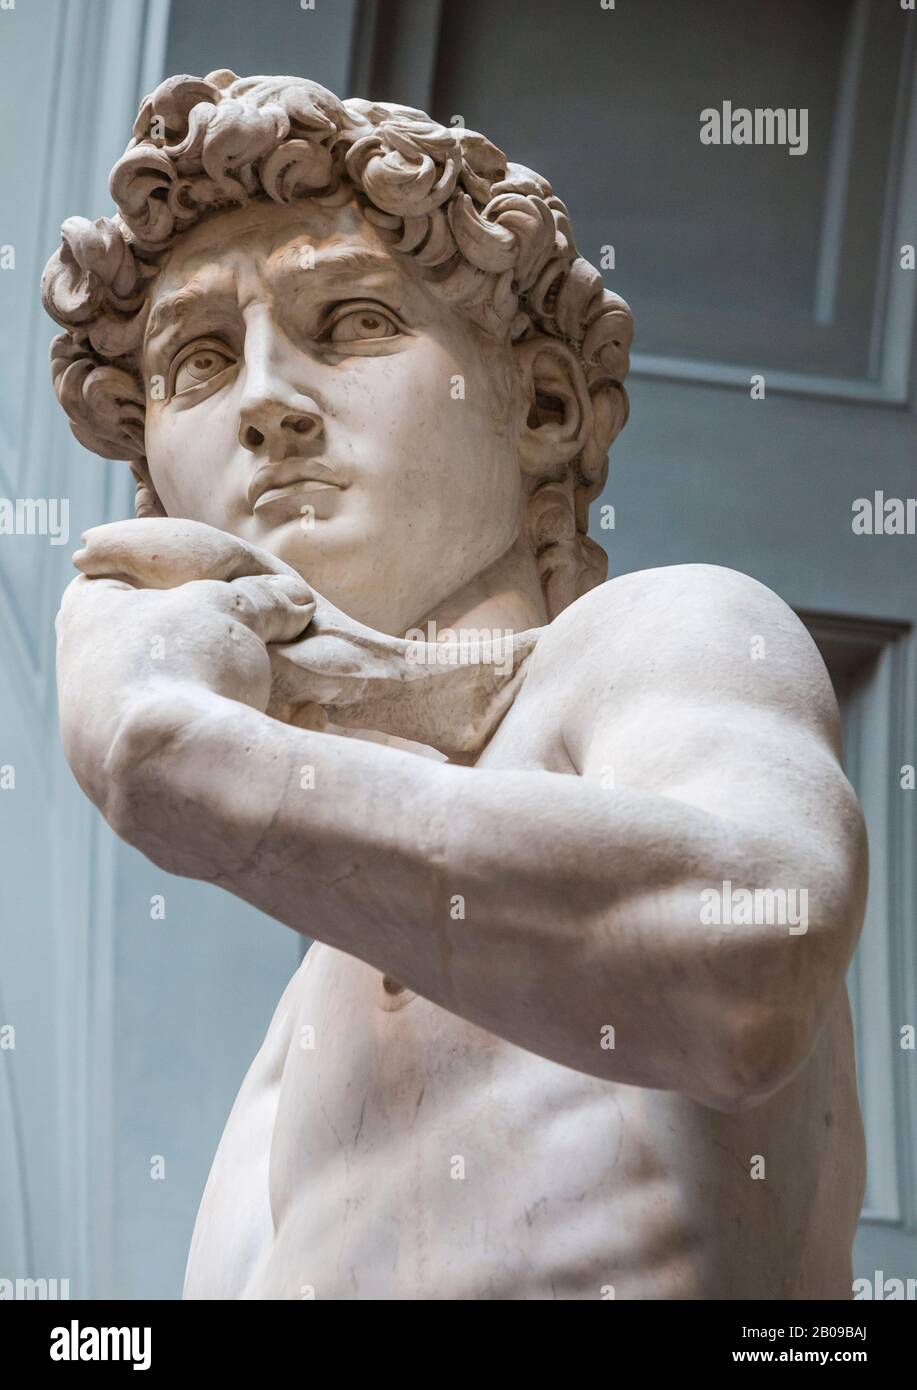 Vue rapprochée de 'David' une sculpture de Michel-Ange. Galerie de l'Académie de Florence, Italie. Banque D'Images